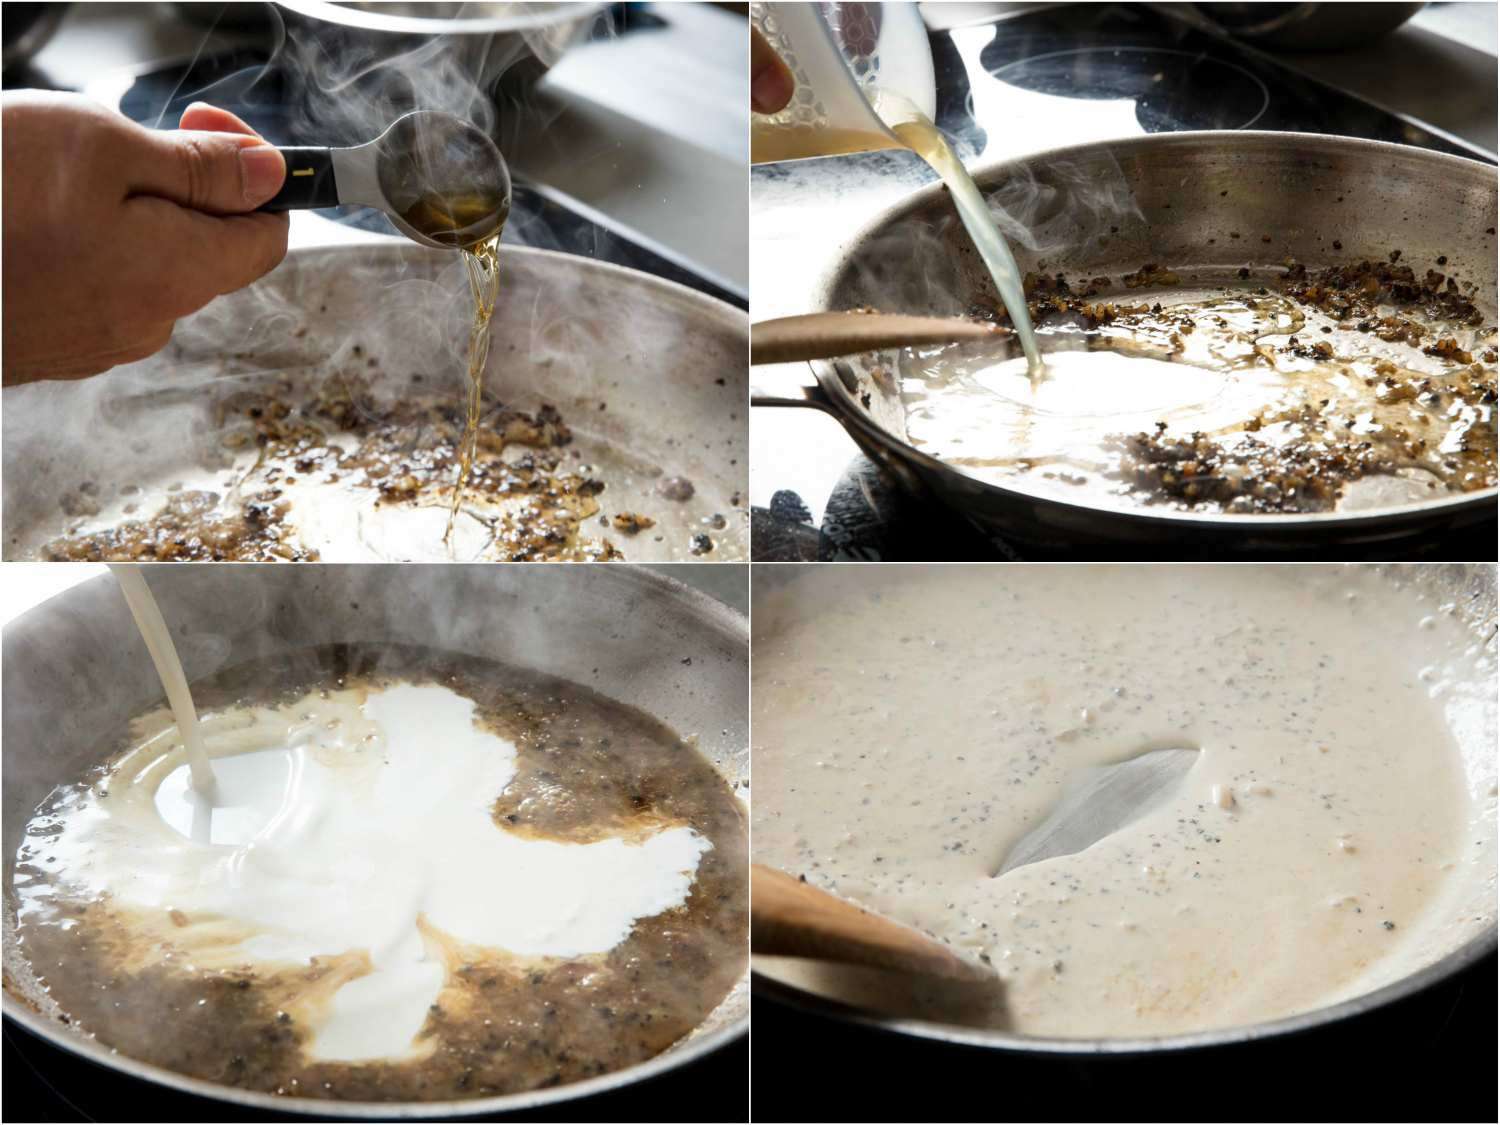 作者制作平底锅酱汁的拼贴画。加入白兰地，然后高汤，最后是奶油。然后搅拌混合物，从锅中释放出棕色的部分。gydF4y2Ba